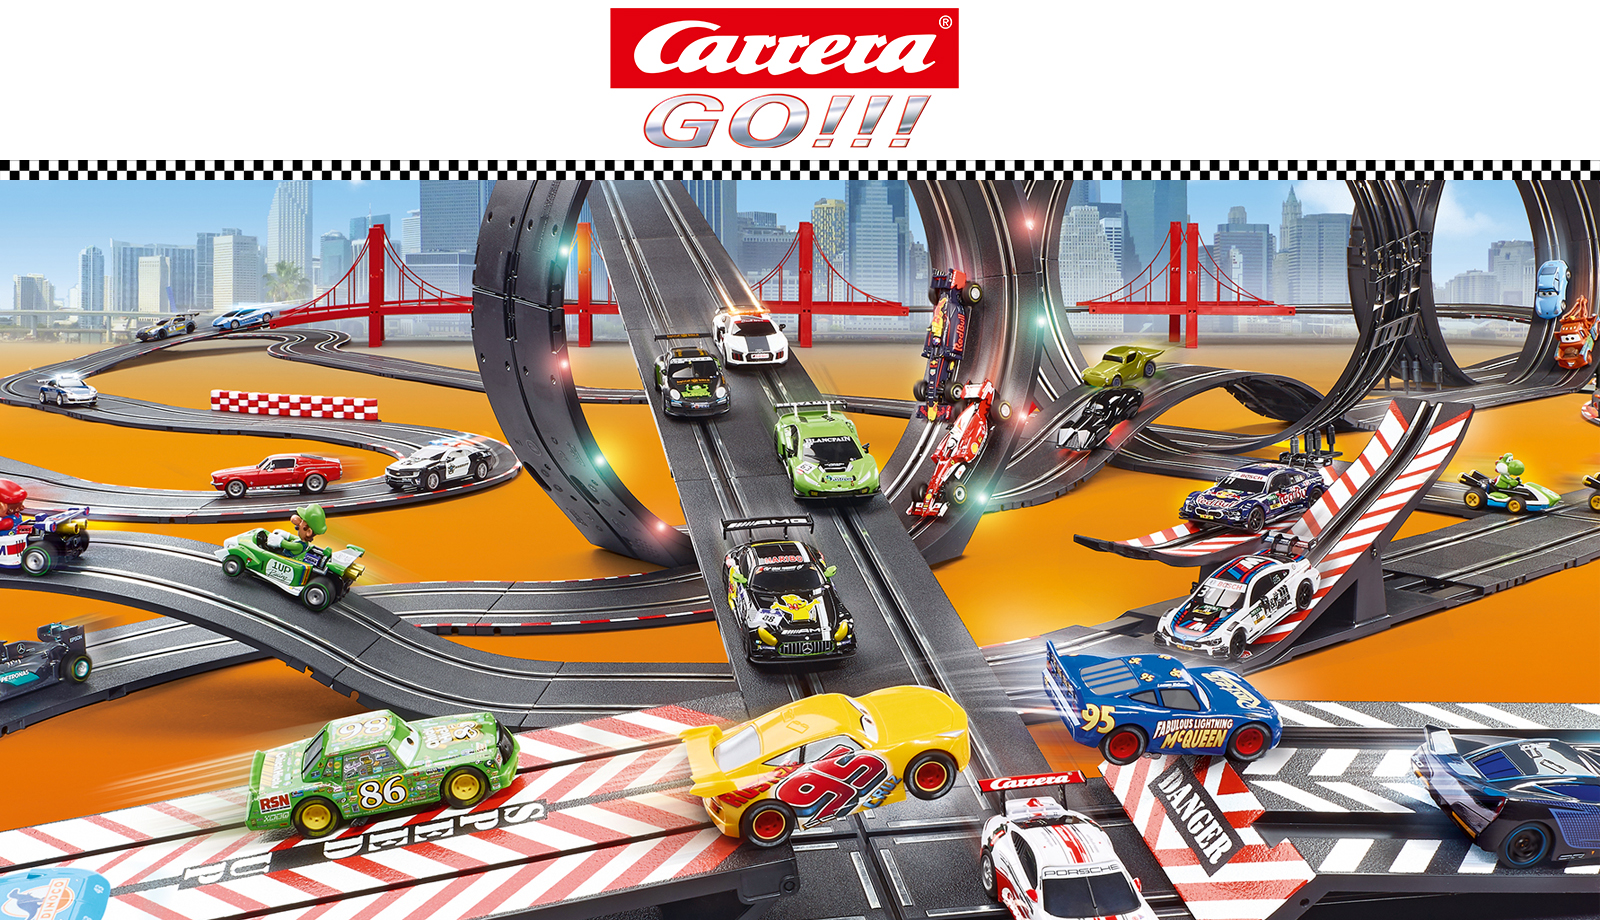 Circuit Carrera GO!!! DTM Race 'n Glory - N/A - Kiabi - 75.49€